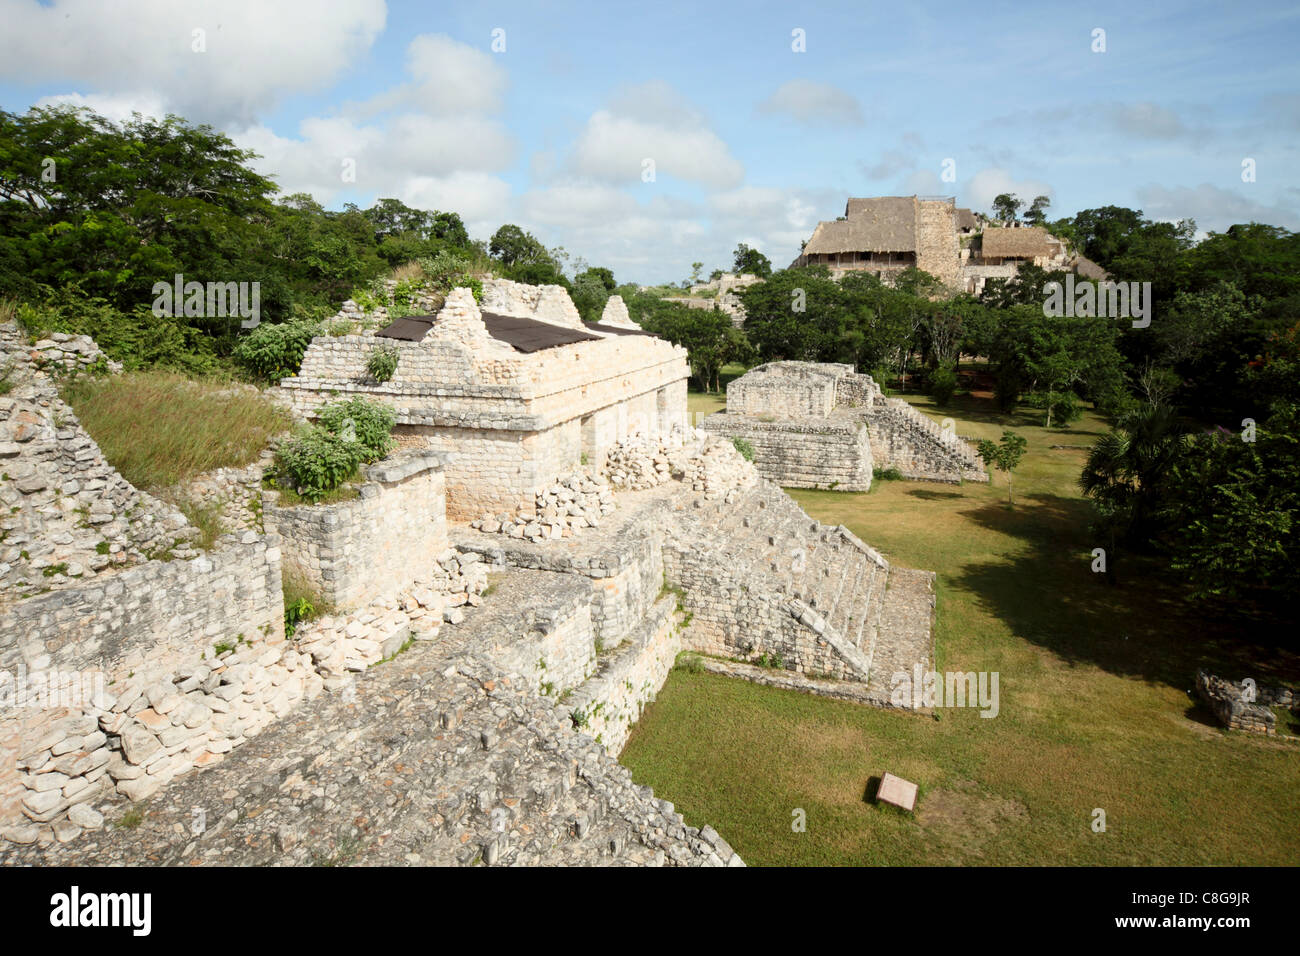 Los dos pirámides, ruinas Mayas, Ek Balam, Yucatán, México Foto de stock